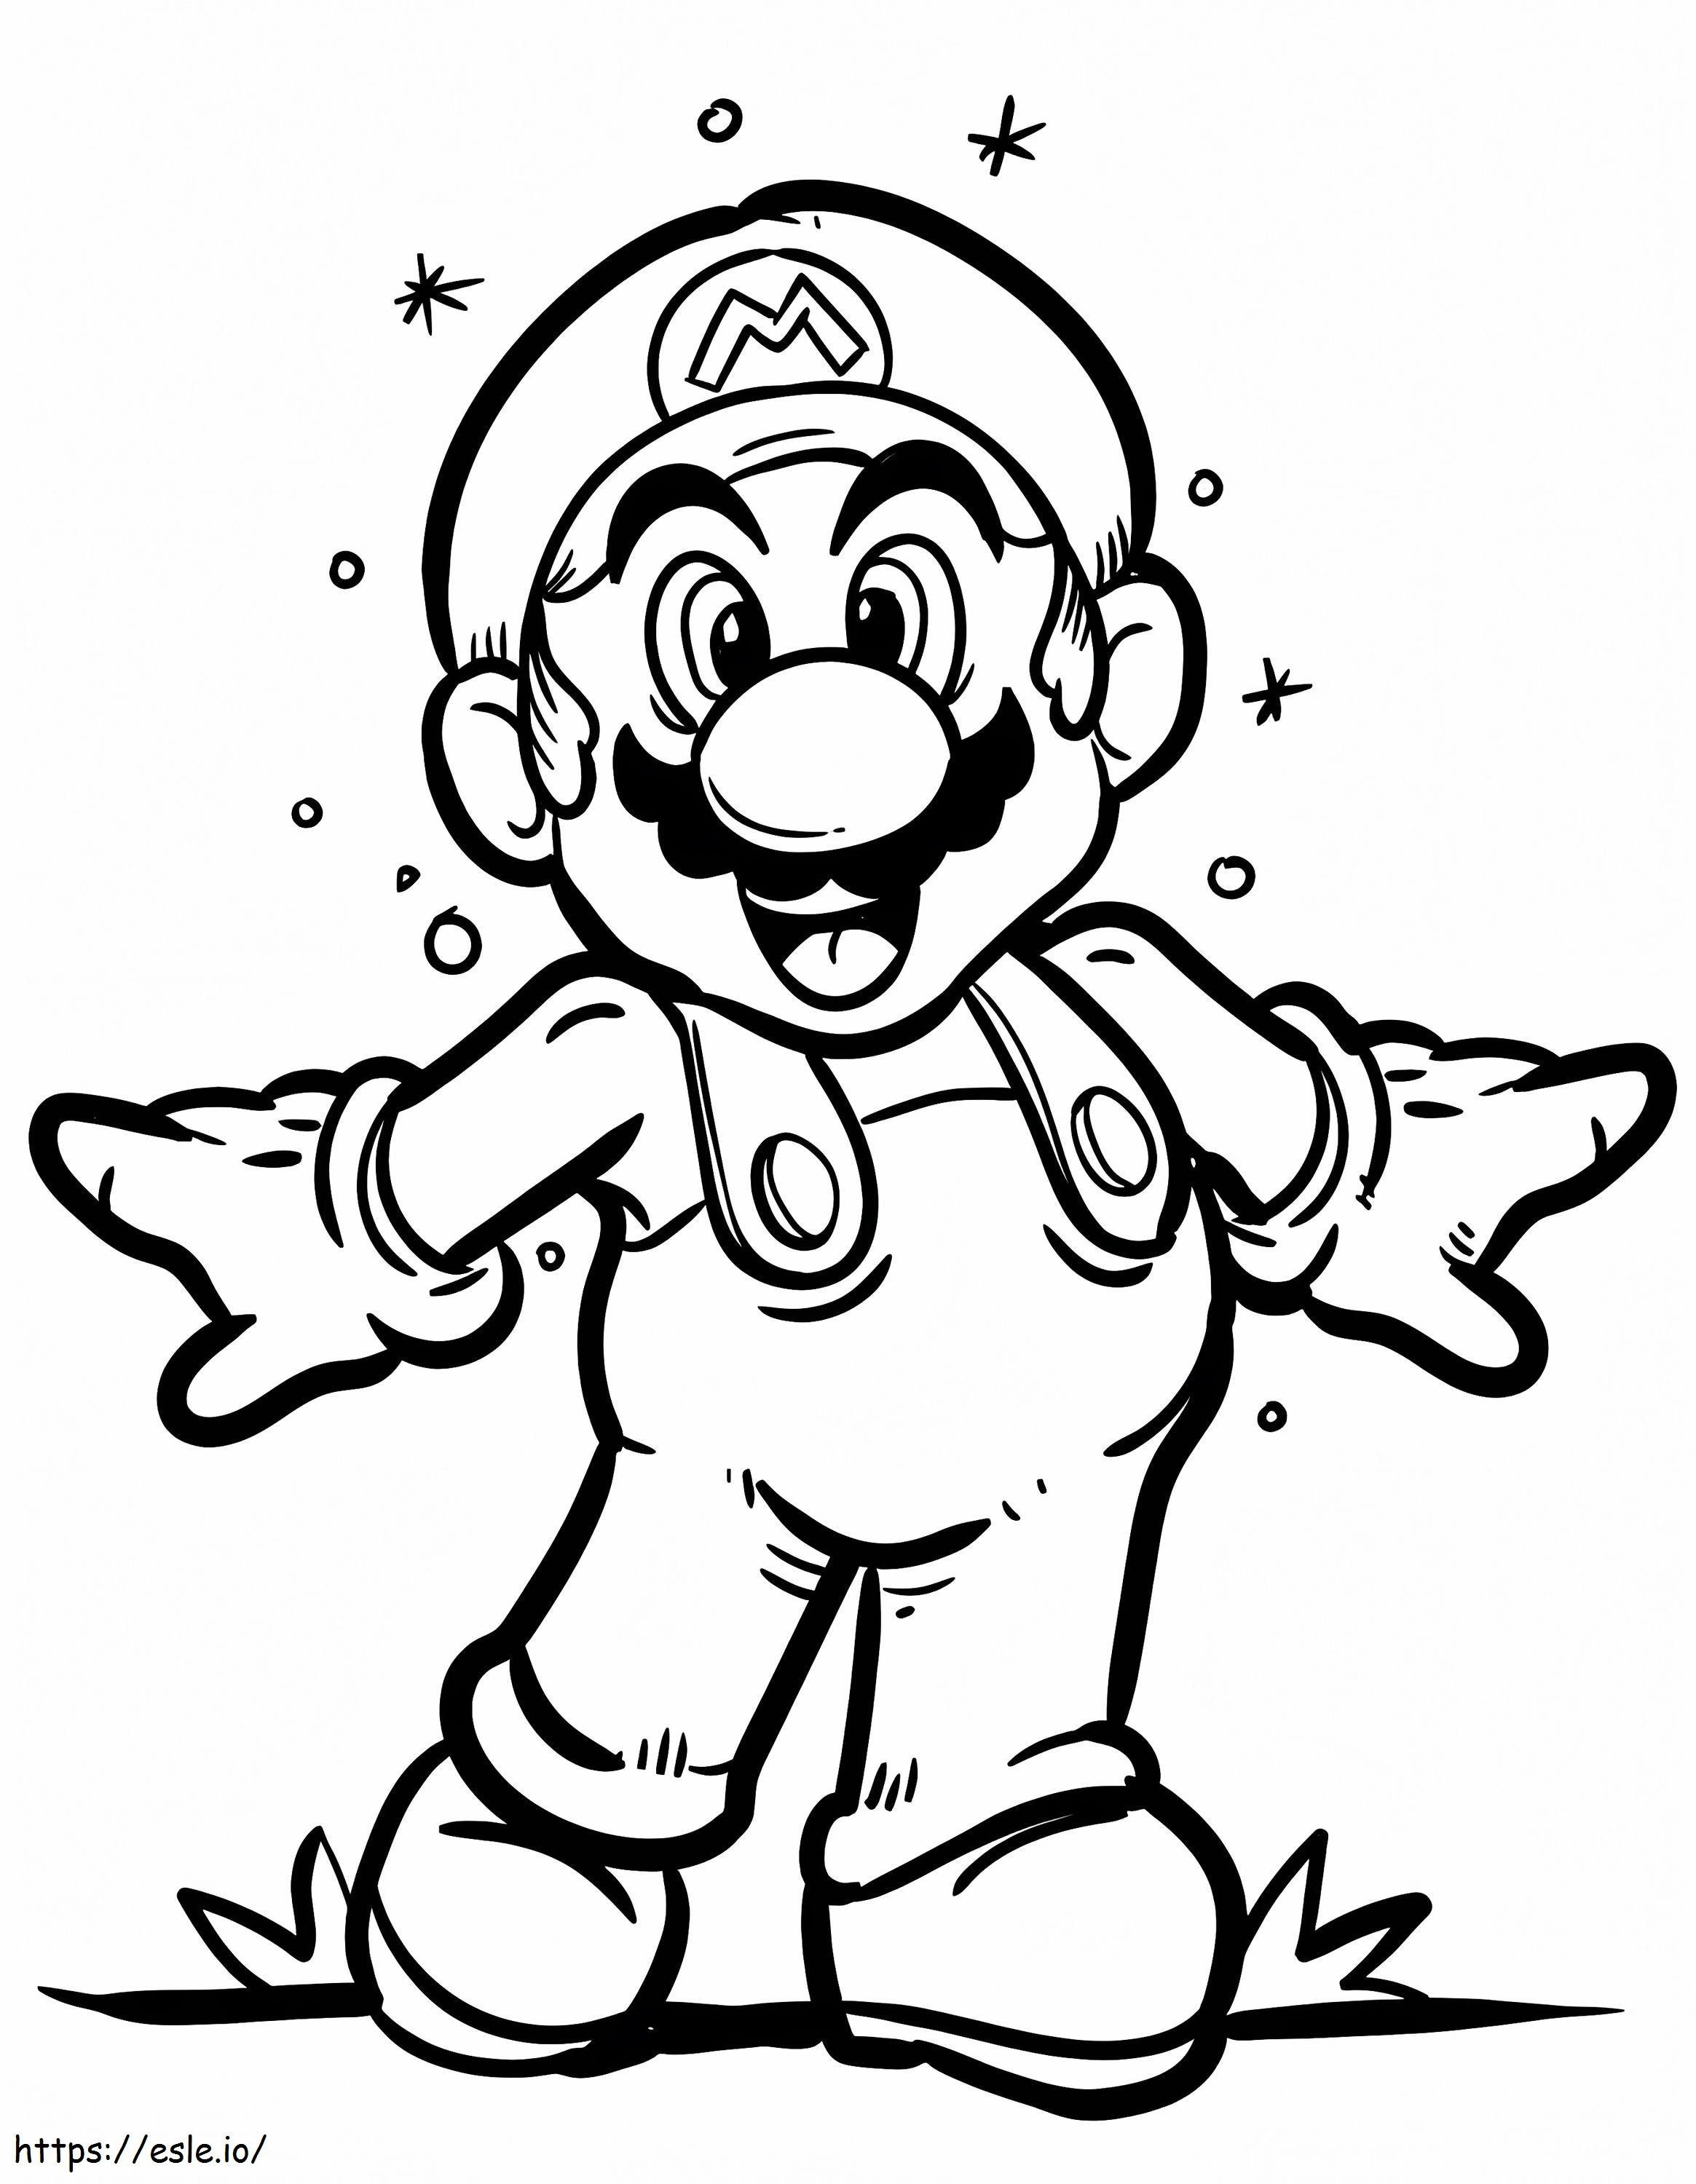 Happy Super Mario coloring page